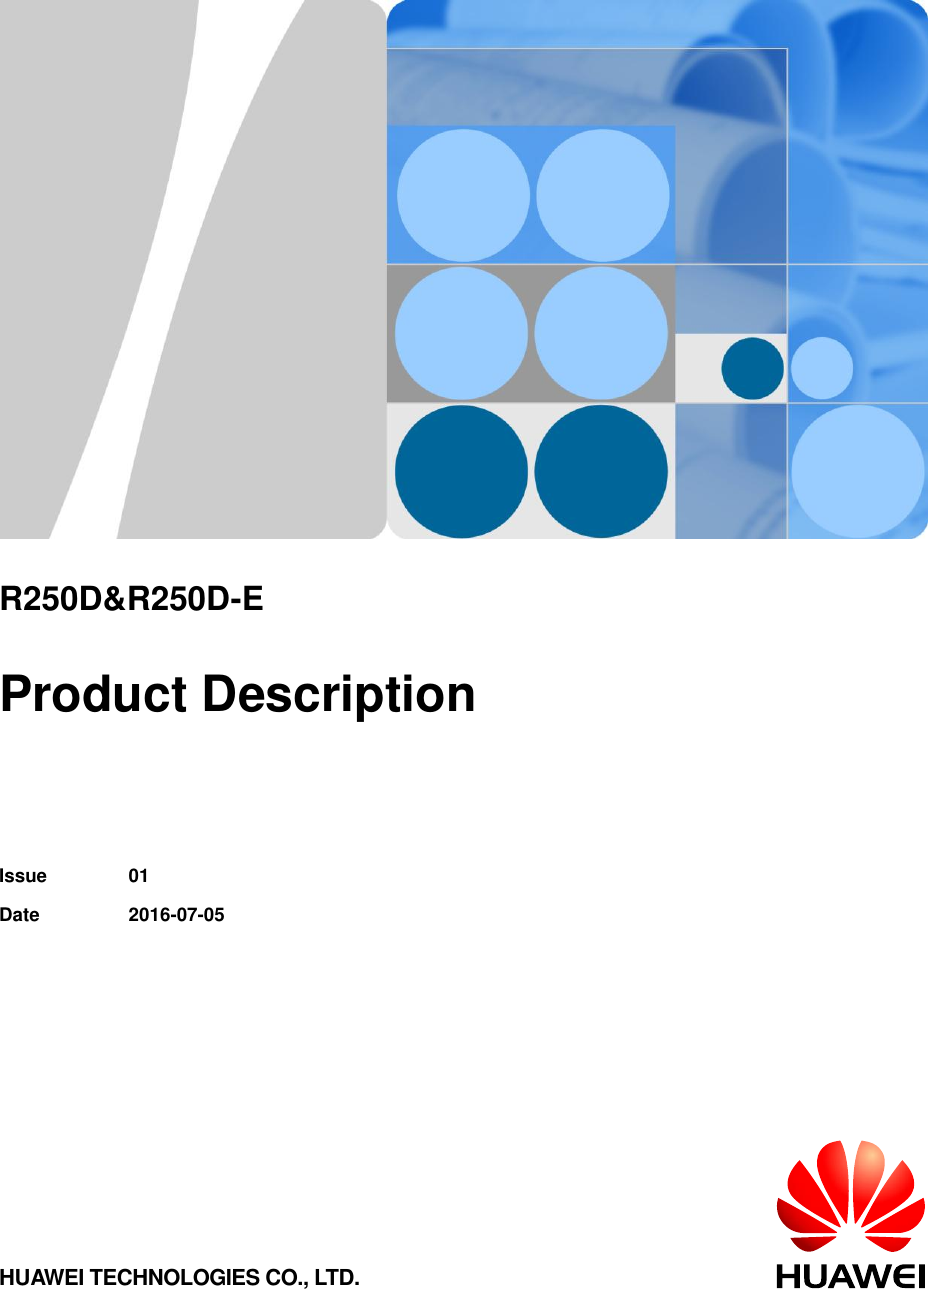           R250D&amp;R250D-E  Product Description   Issue 01 Date 2016-07-05 HUAWEI TECHNOLOGIES CO., LTD. 